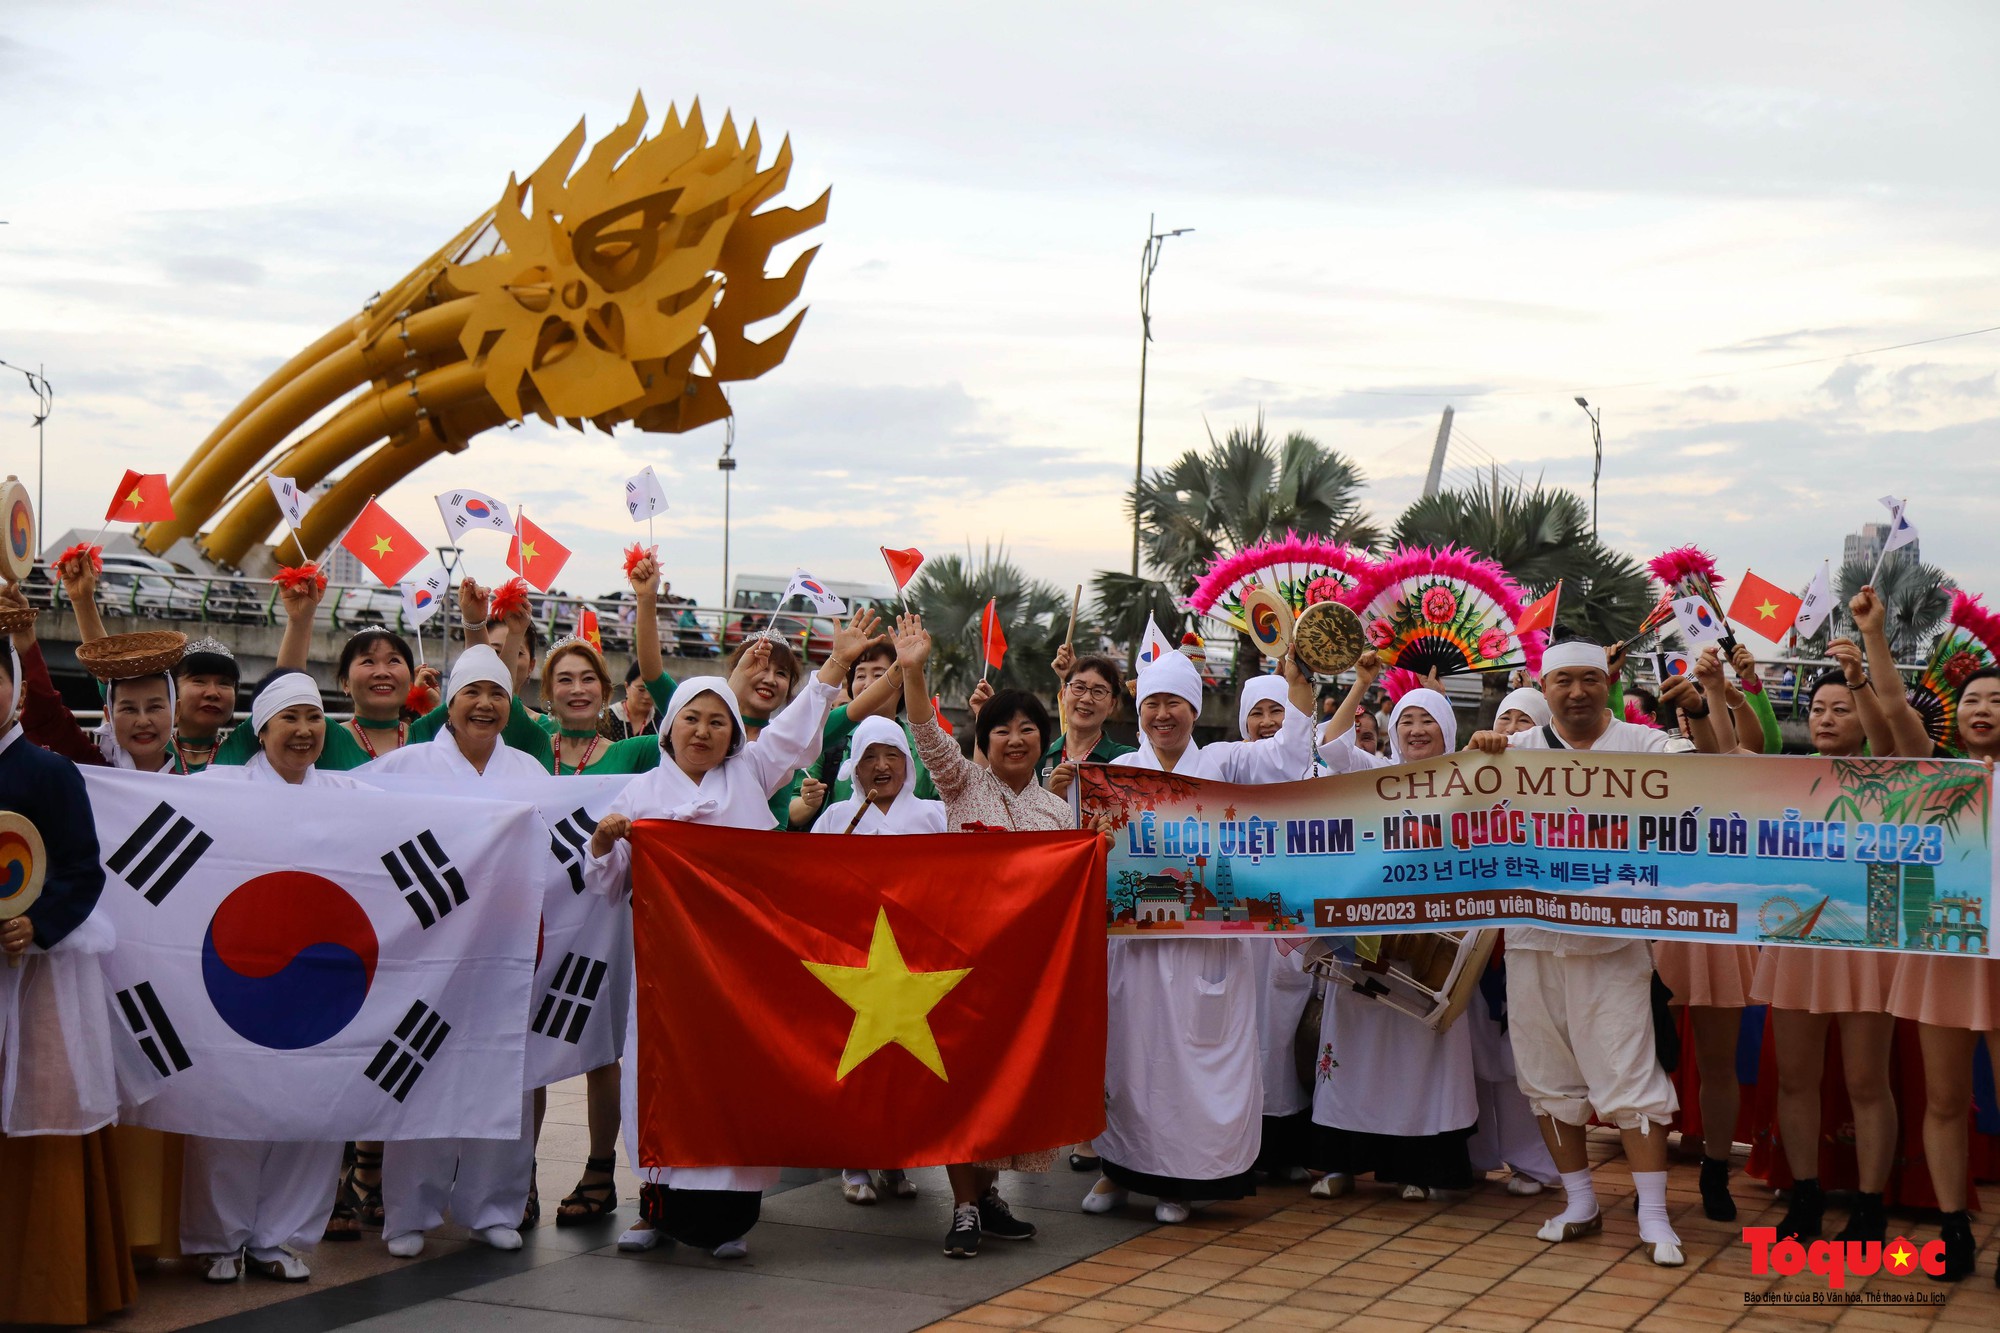 Đoàn diễu hành chào mừng Lễ hội Việt Nam – Hàn Quốc rực rỡ bên sông Hàn - Ảnh 10.